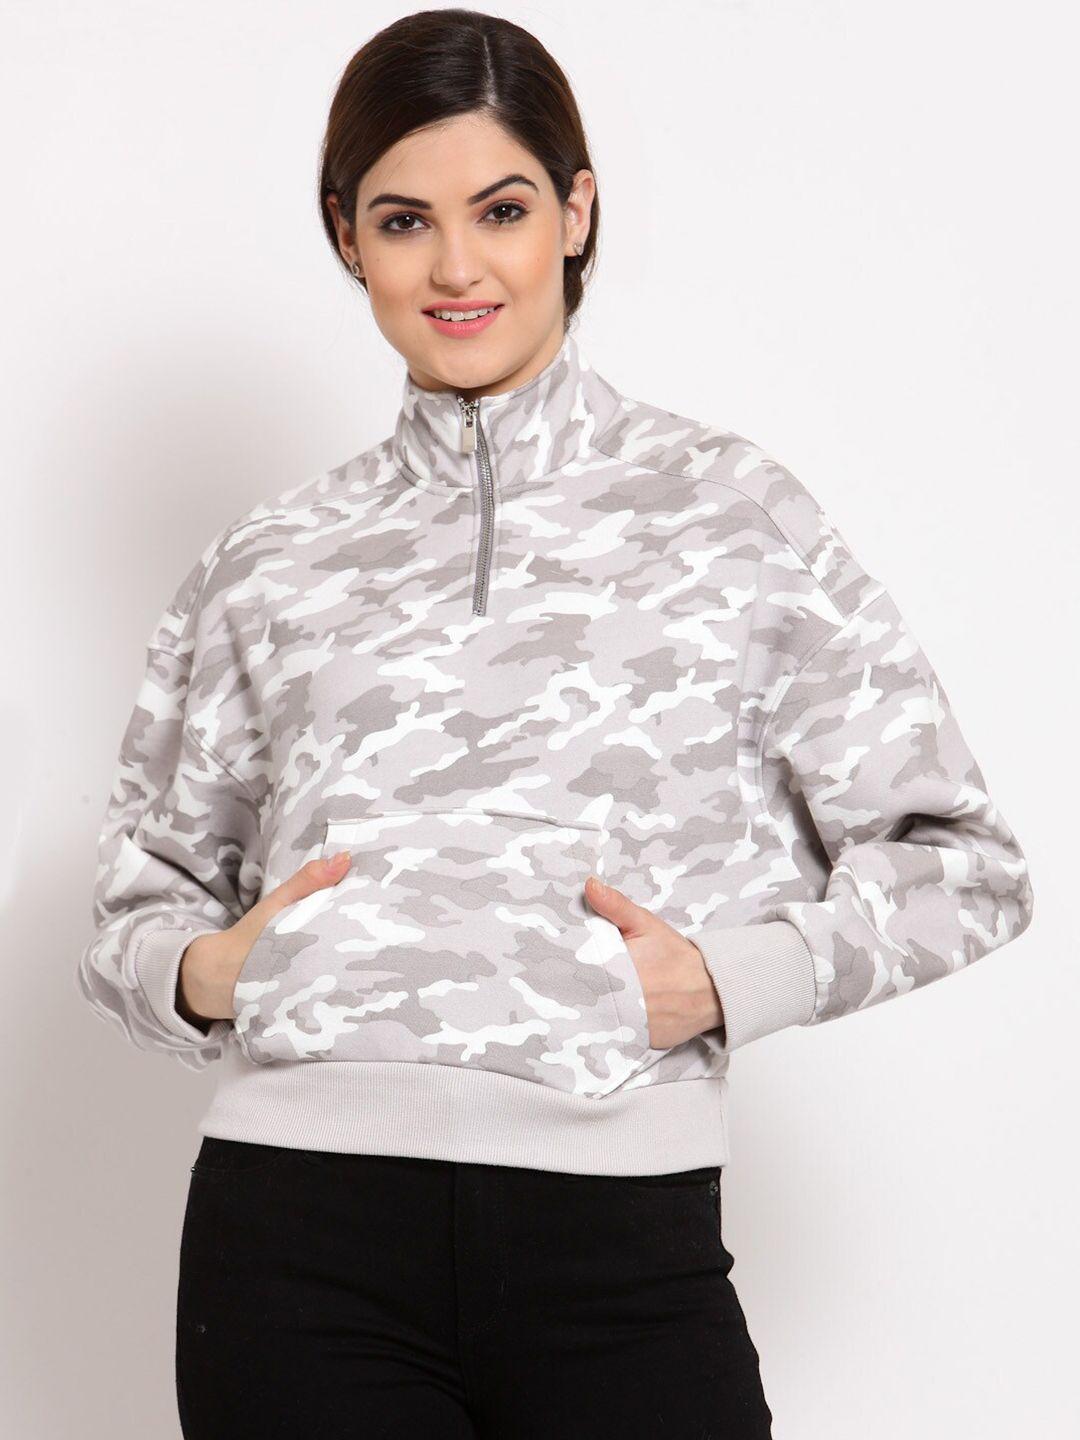 juelle women grey & white camouflage printed sweatshirt